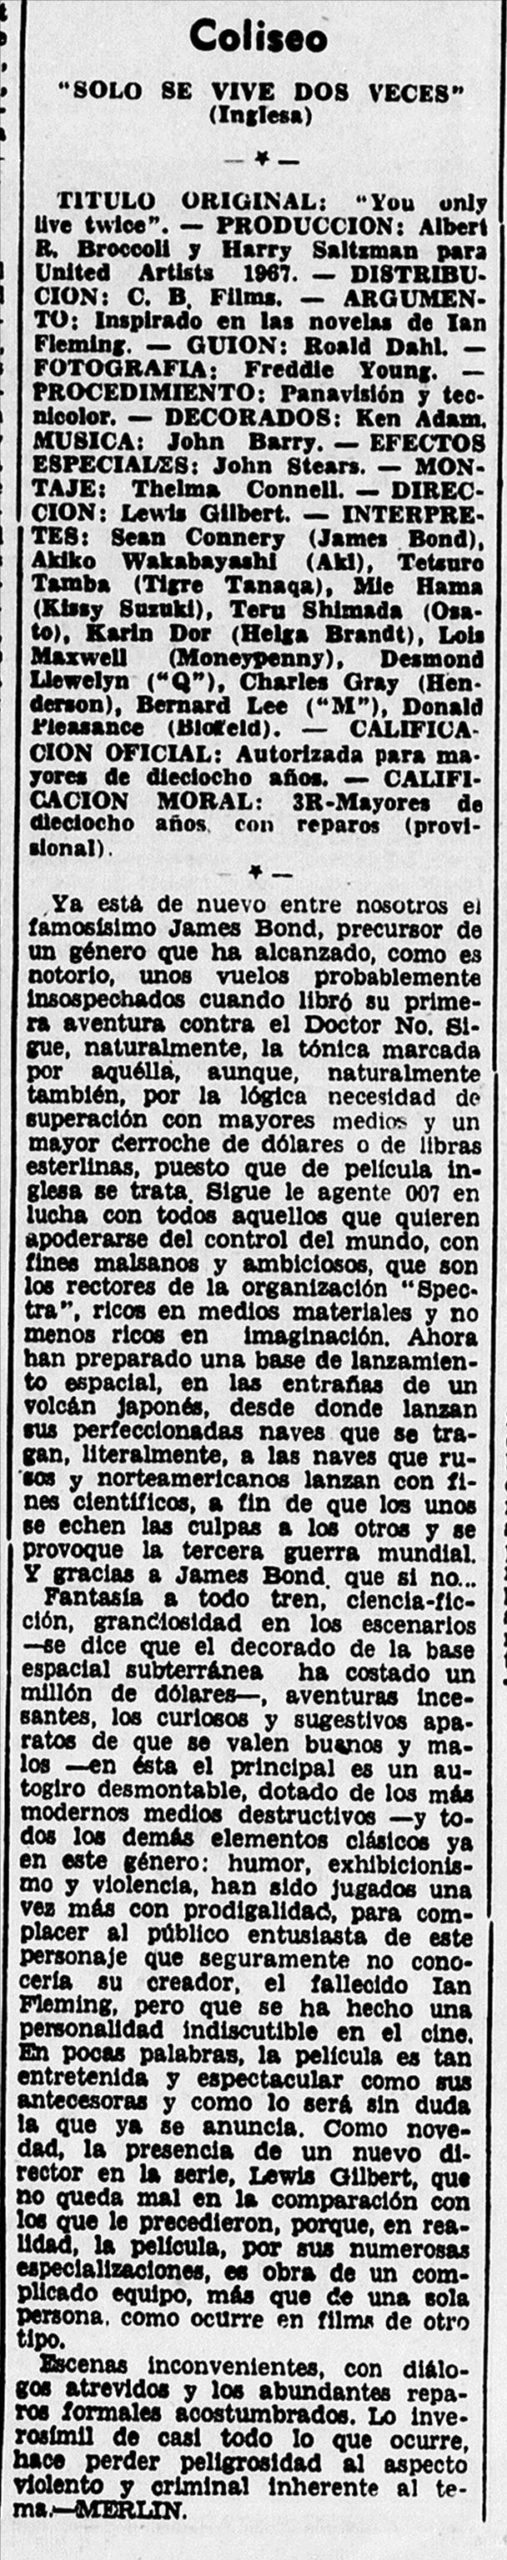 05 1967 10 17 El Noticiero Zaragoza 18 Critica scaled